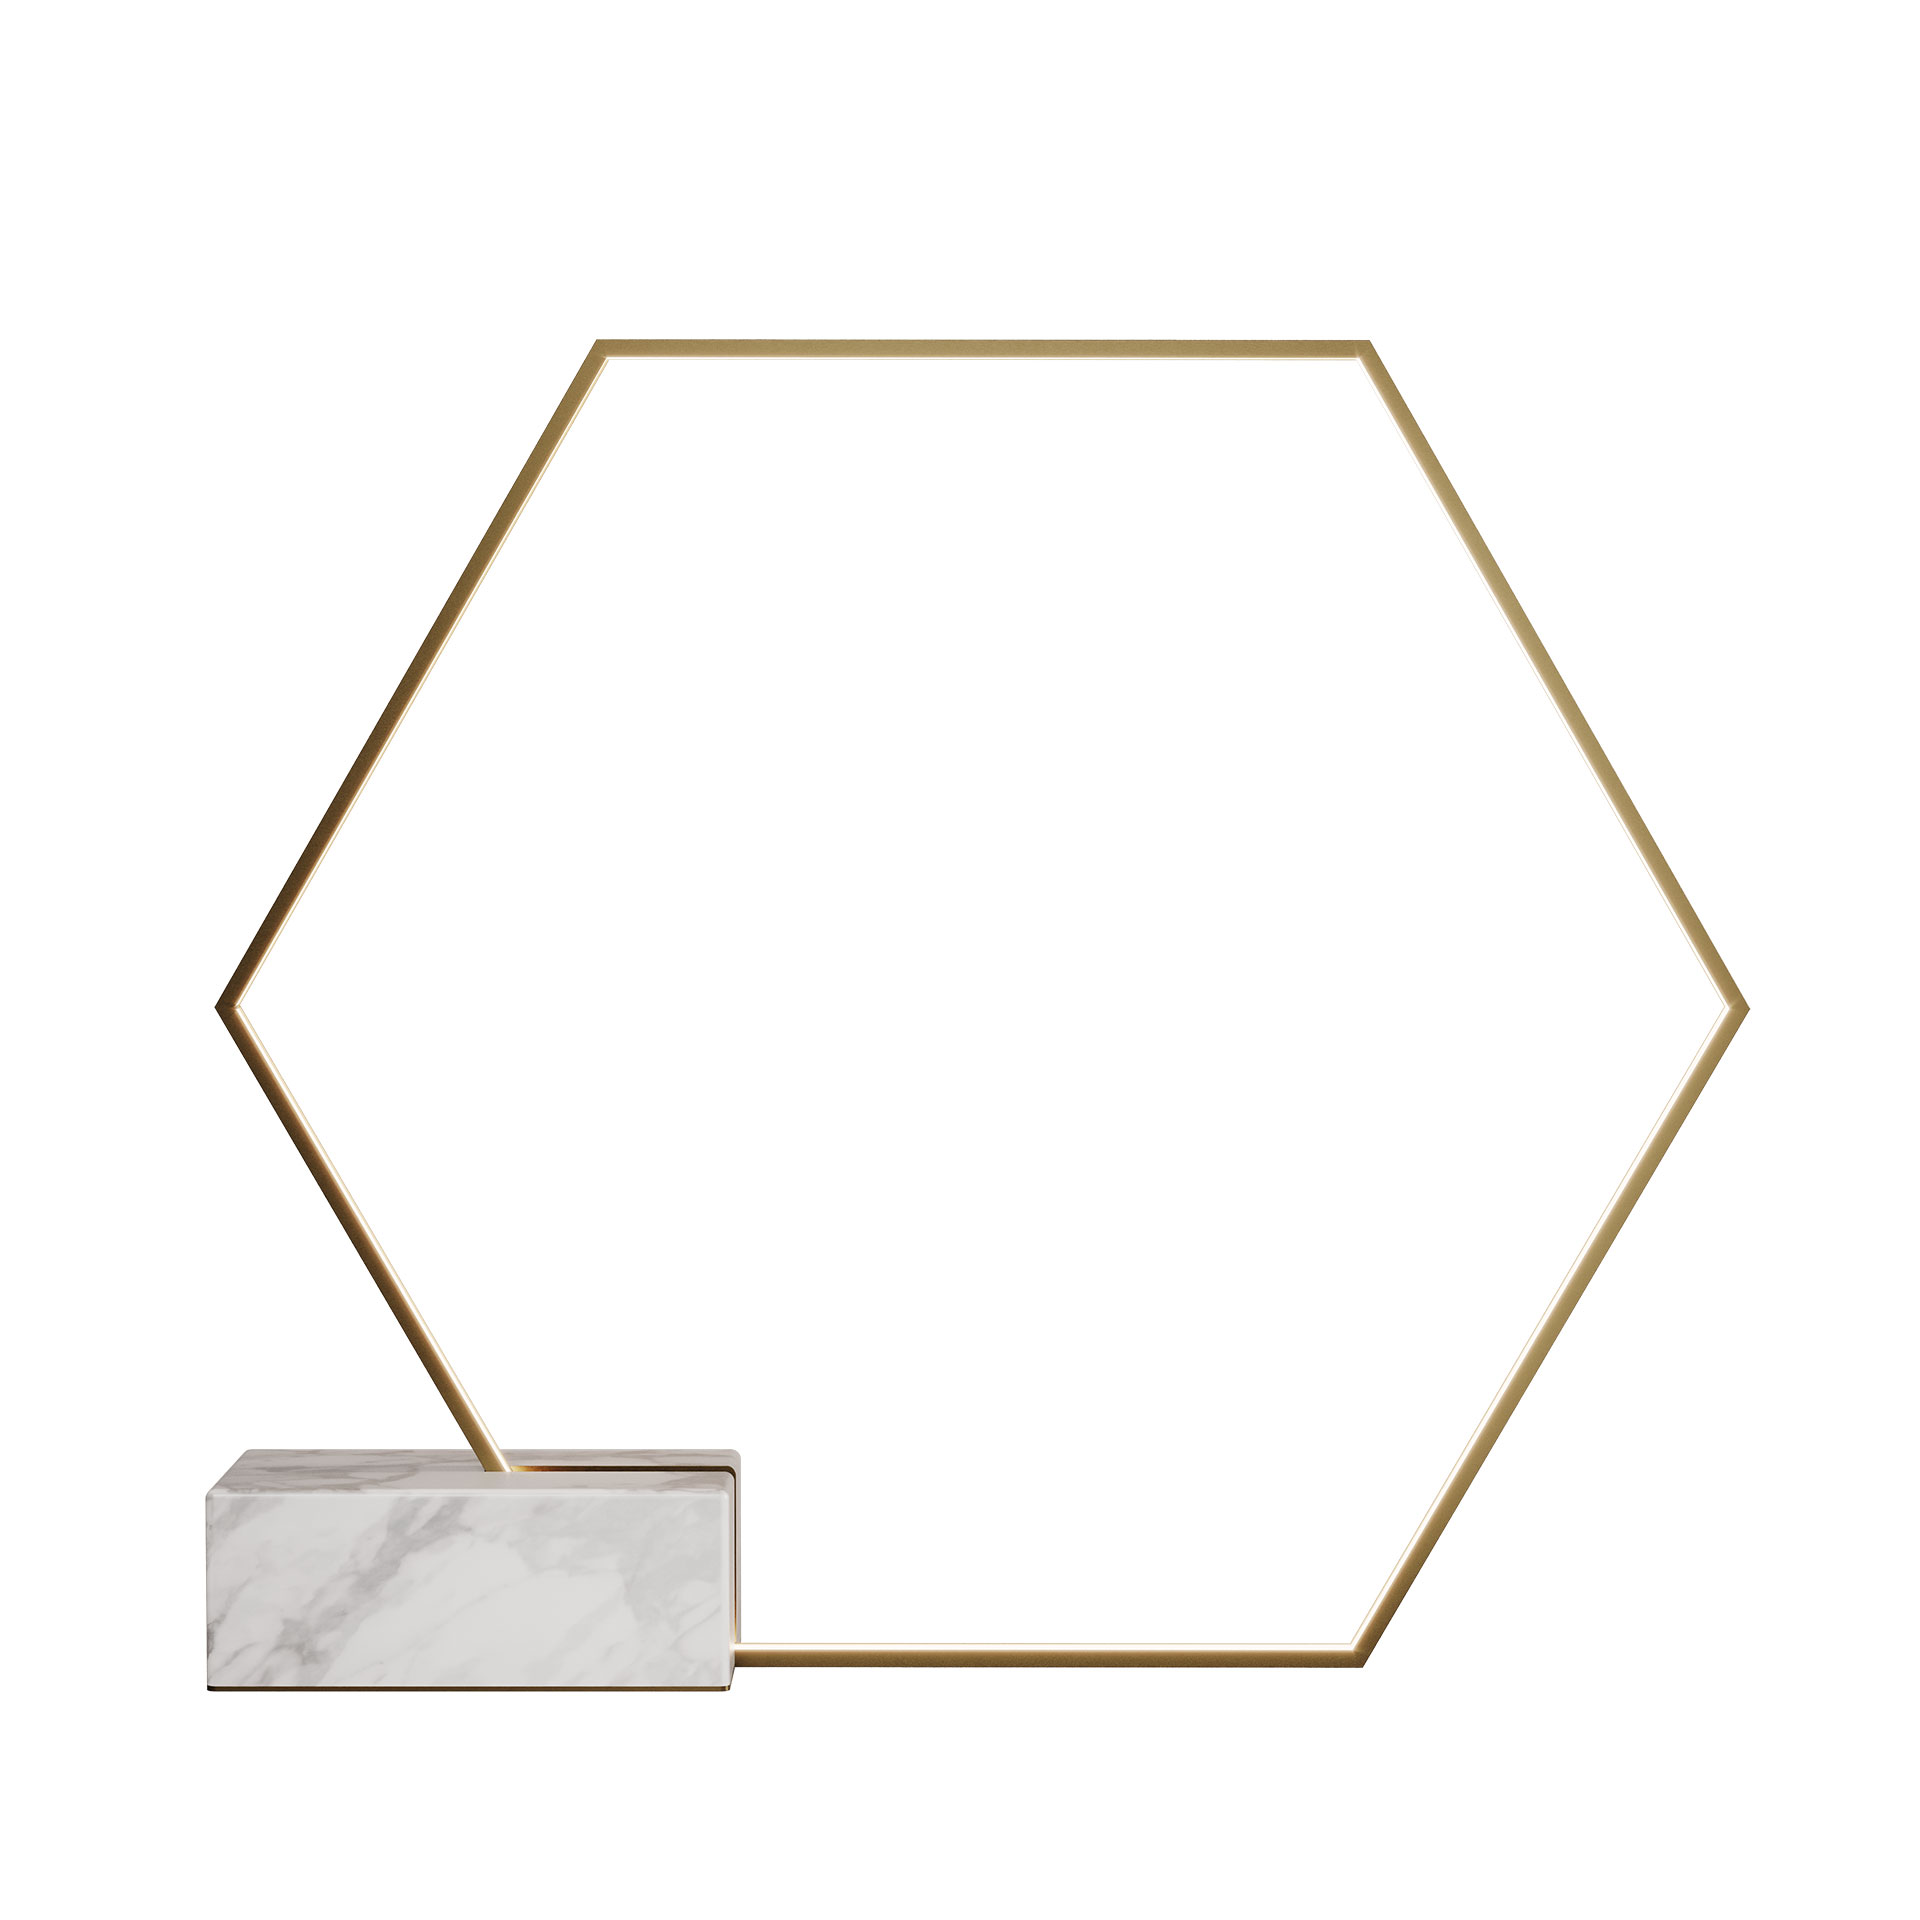 Hexagon floor lamp